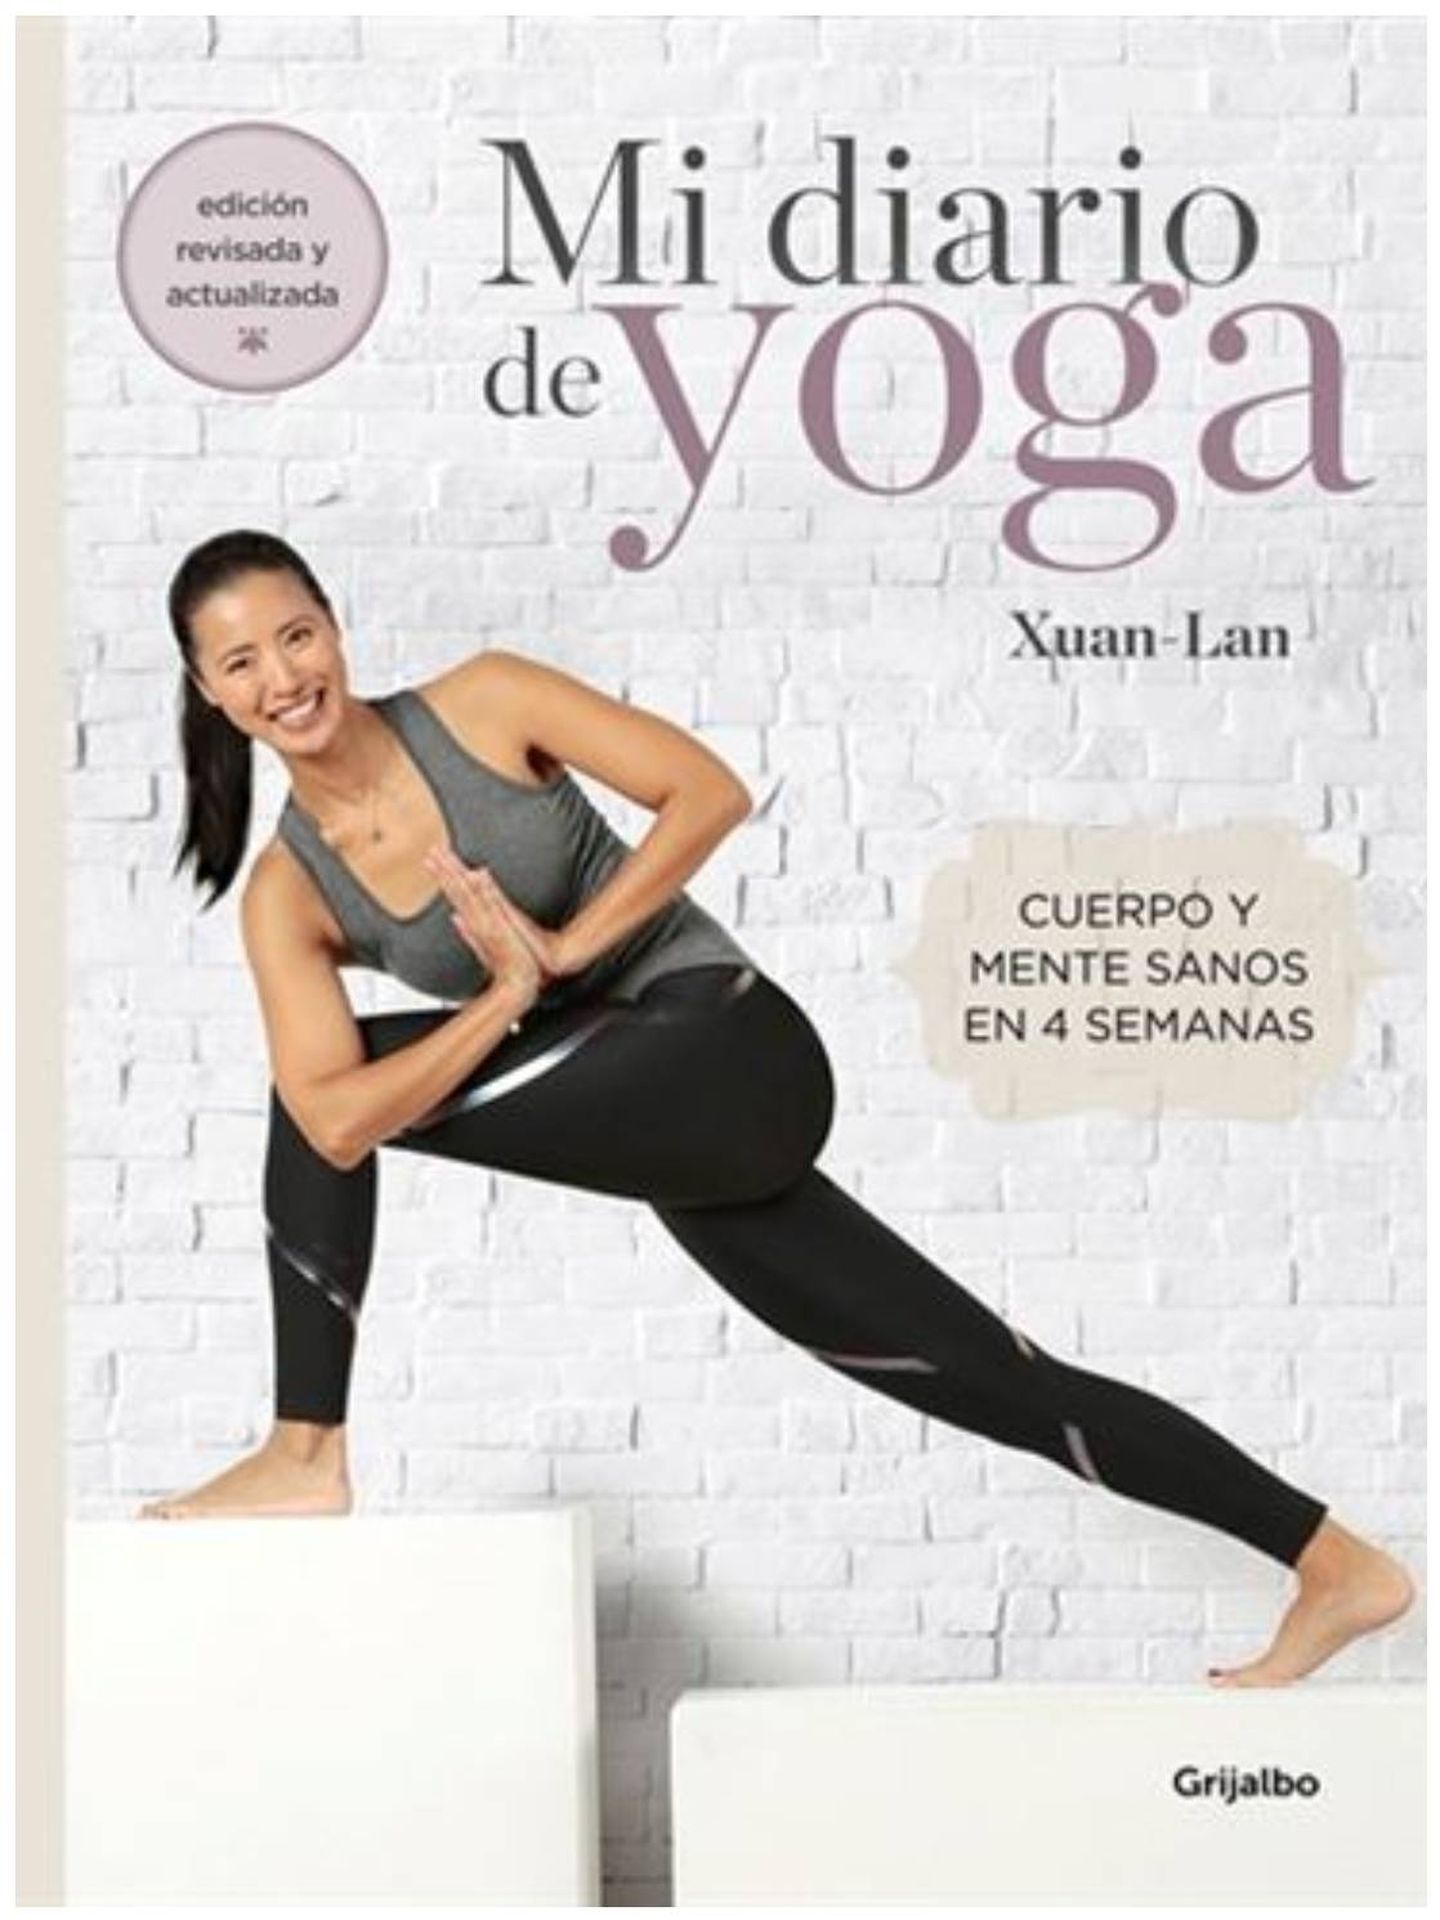 Disfruta de las ventajas del yoga gracias a Amazon. (Cortesía)